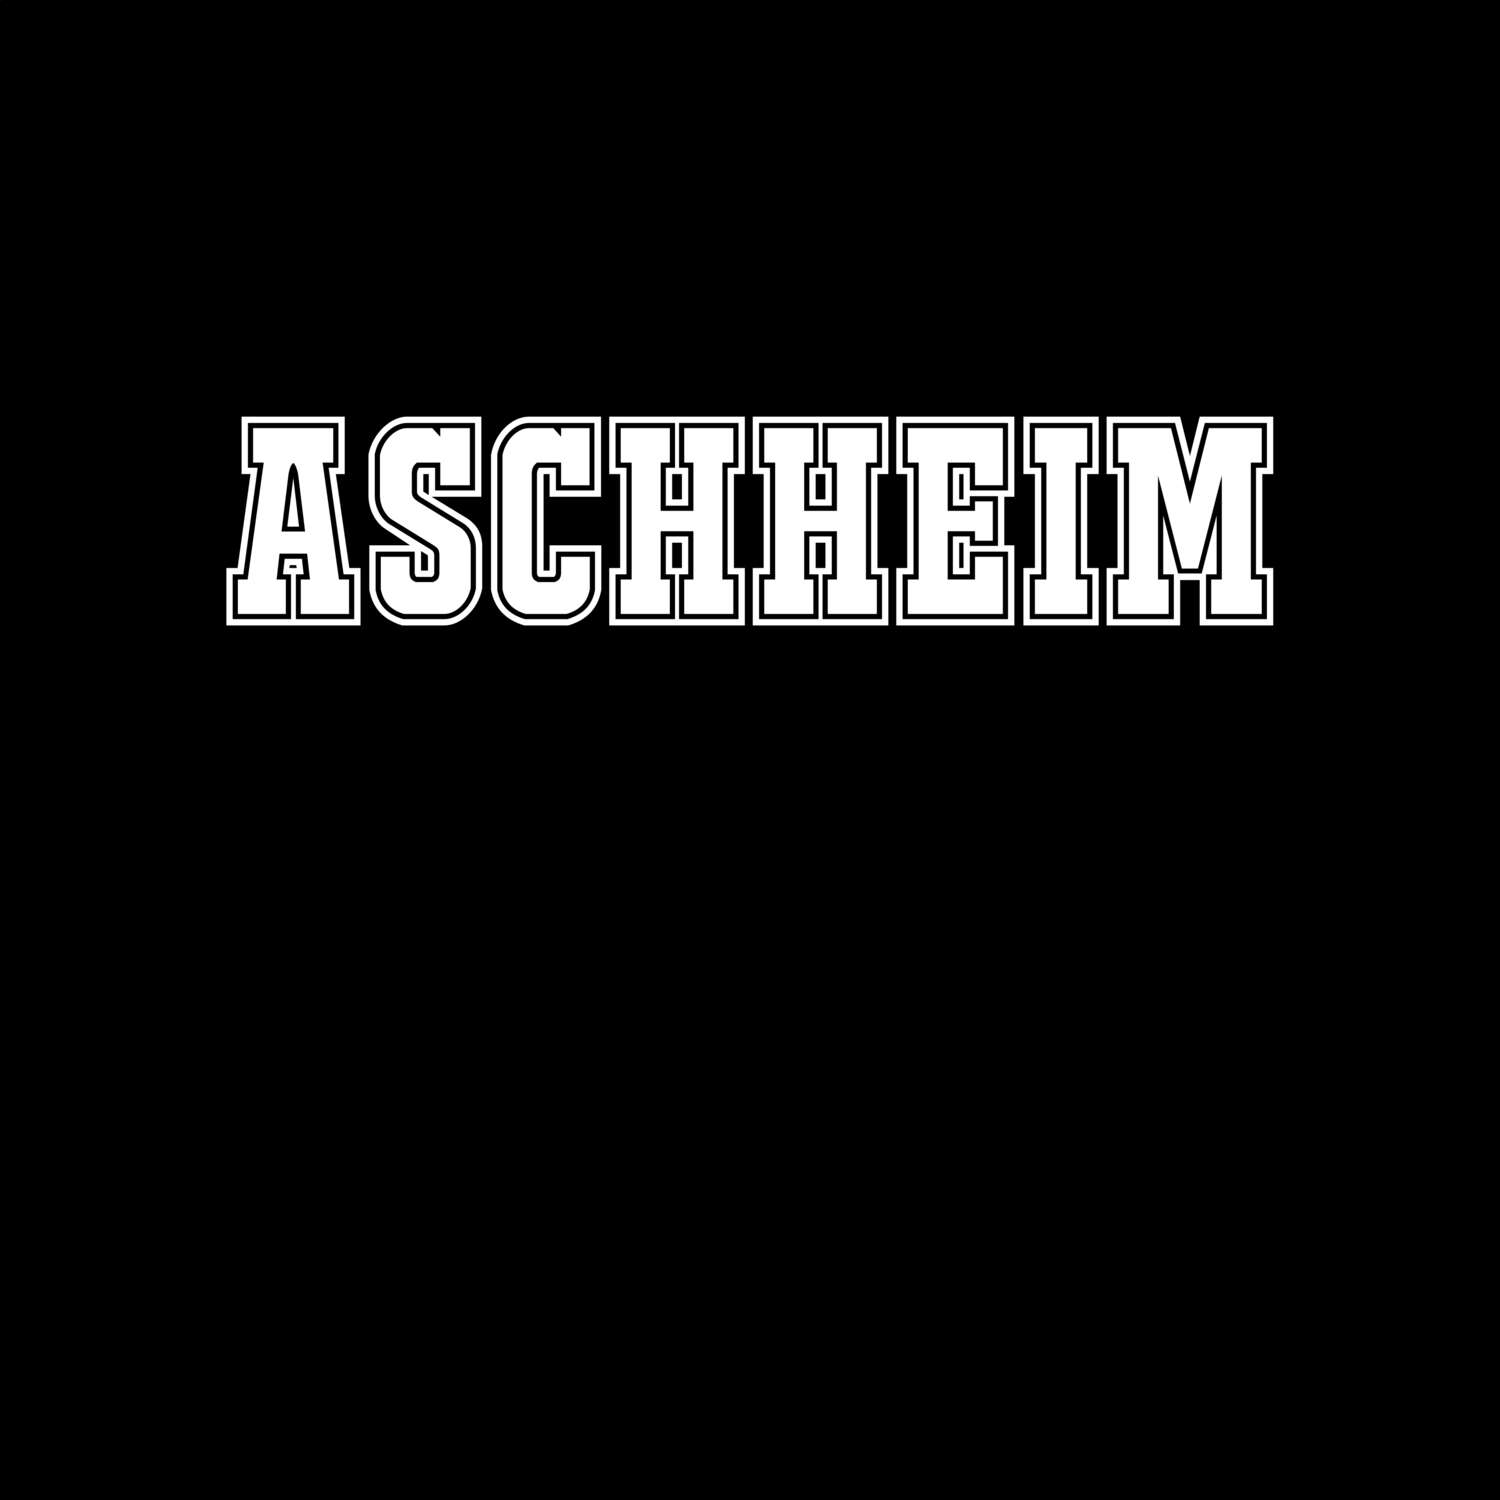 Aschheim T-Shirt »Classic«